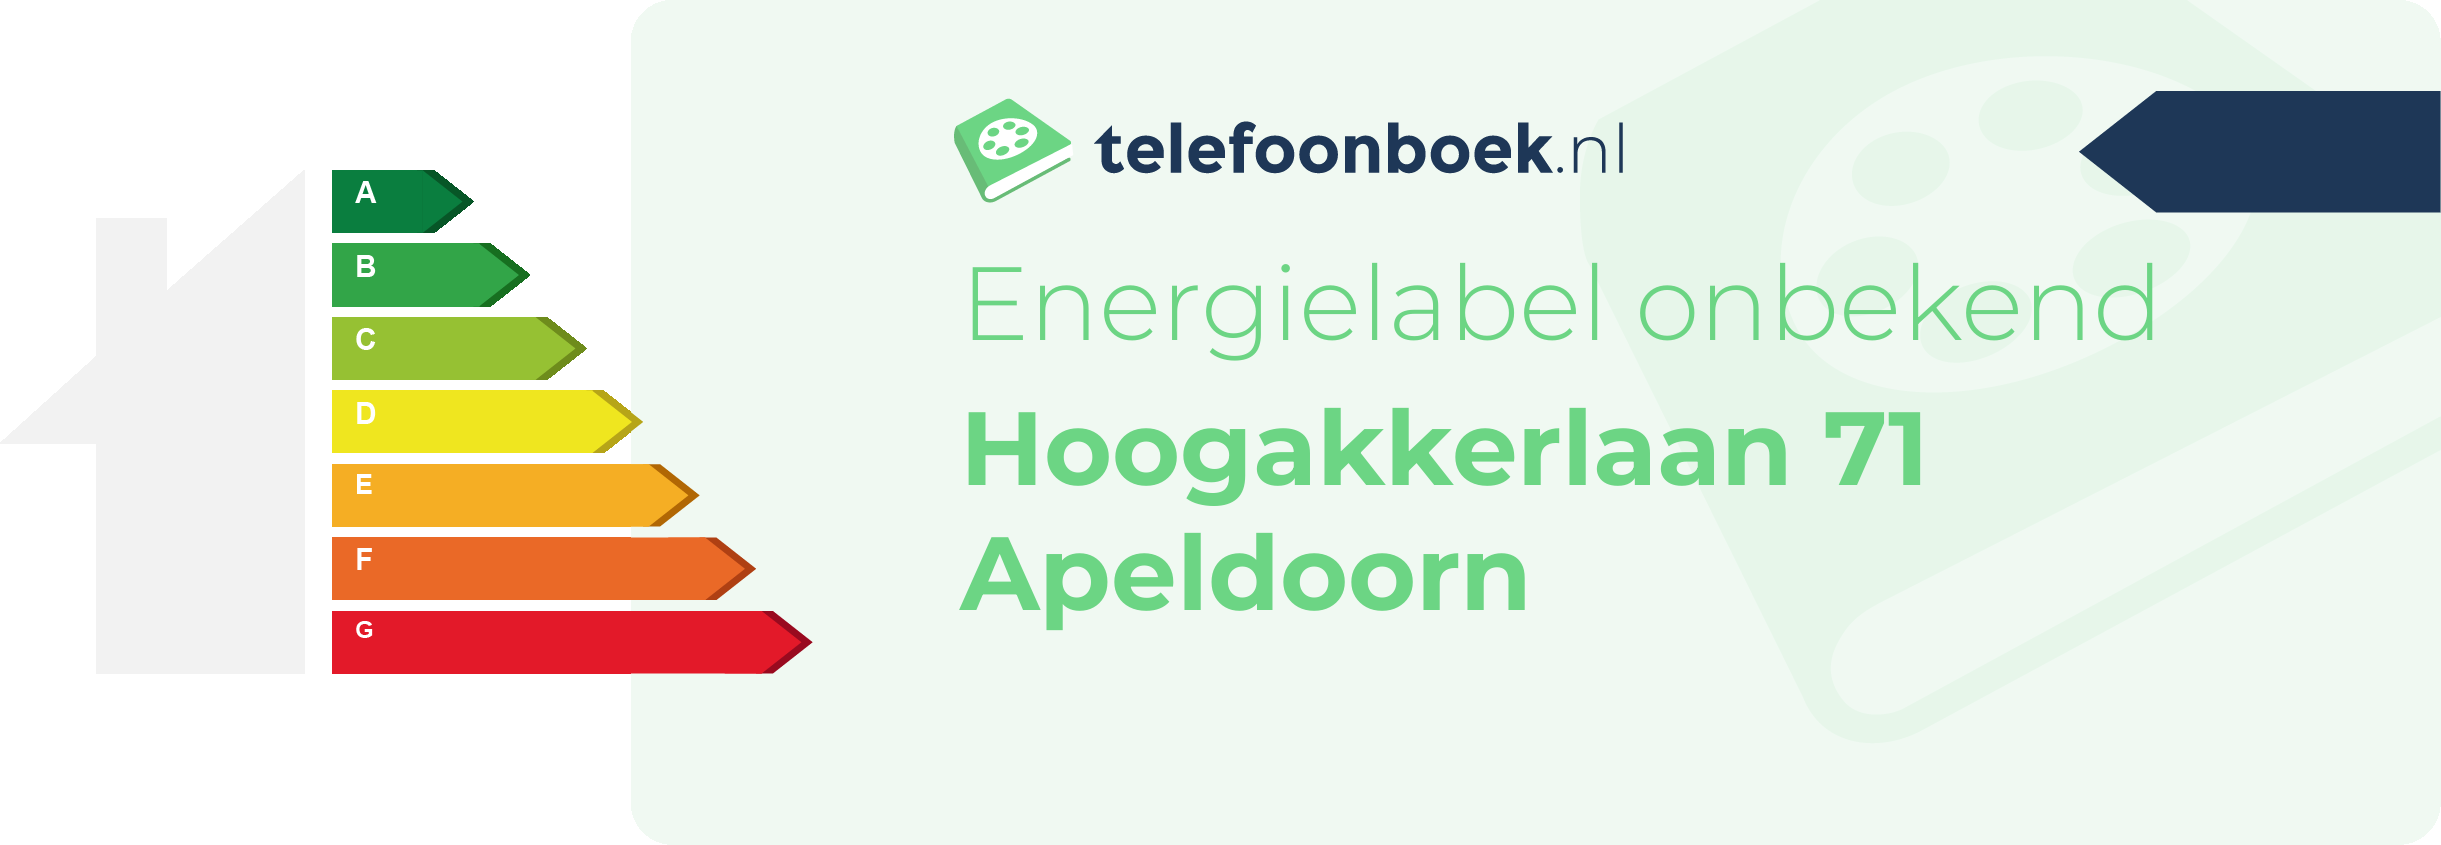 Energielabel Hoogakkerlaan 71 Apeldoorn